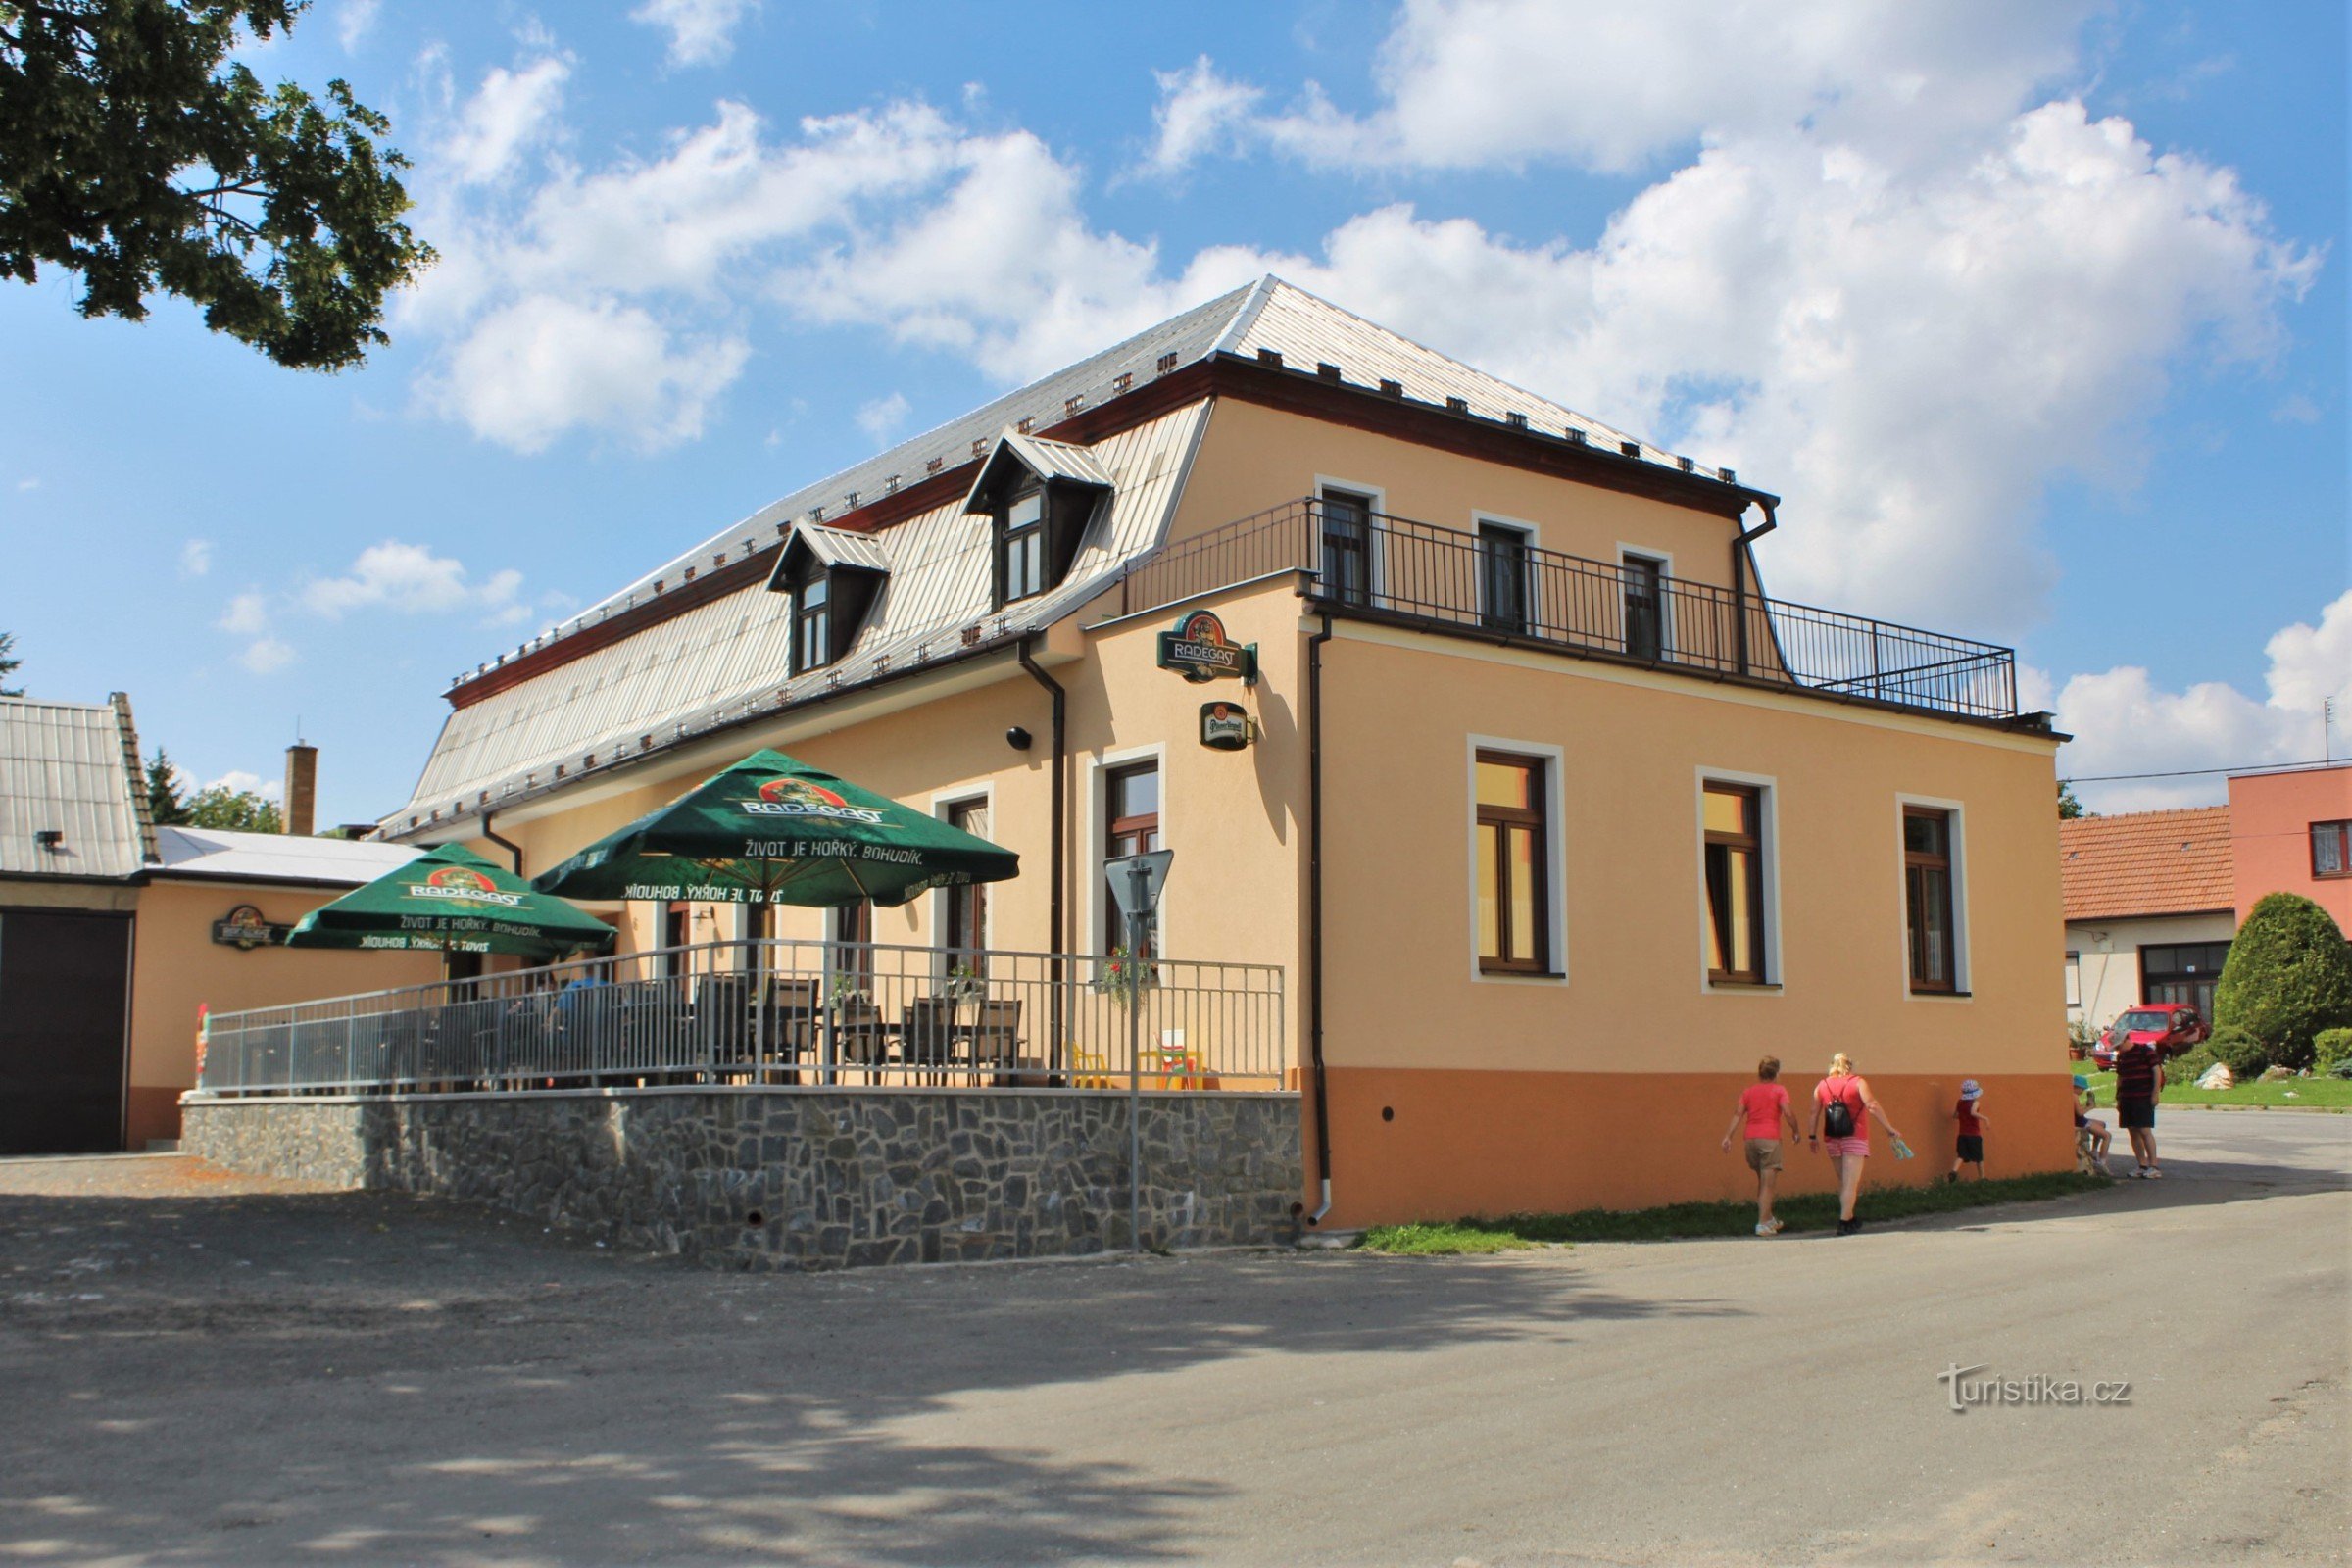 El Staré časy Inn ofrece comidas durante todo el día y también tiene una recepción en el verano.